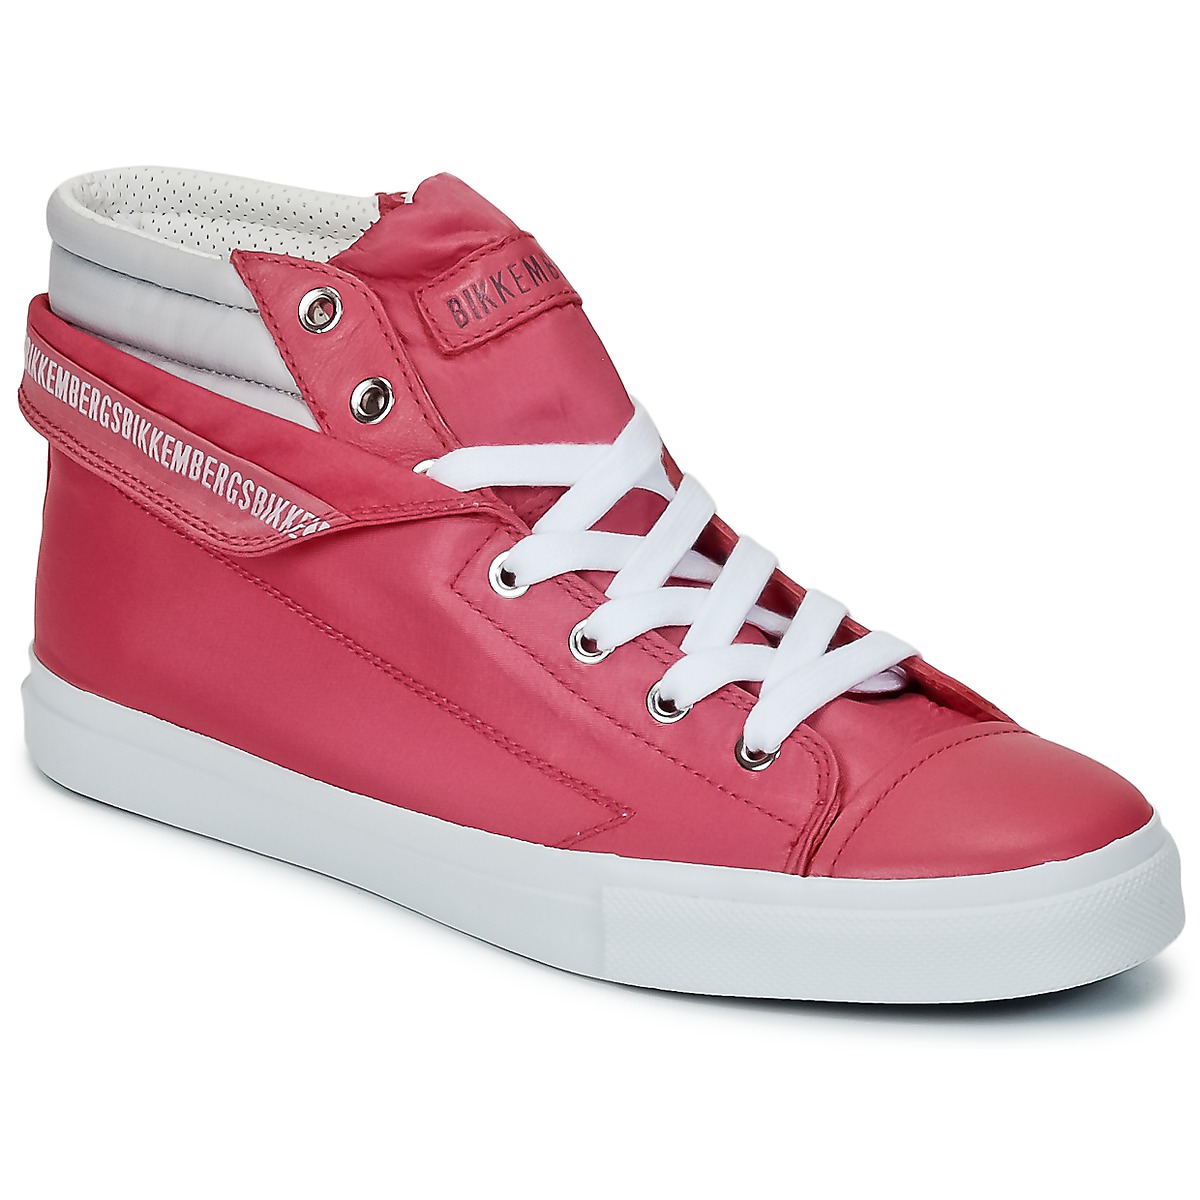 Παπούτσια Γυναίκα Ψηλά Sneakers Bikkembergs PLUS 647 Pink / Γκρι